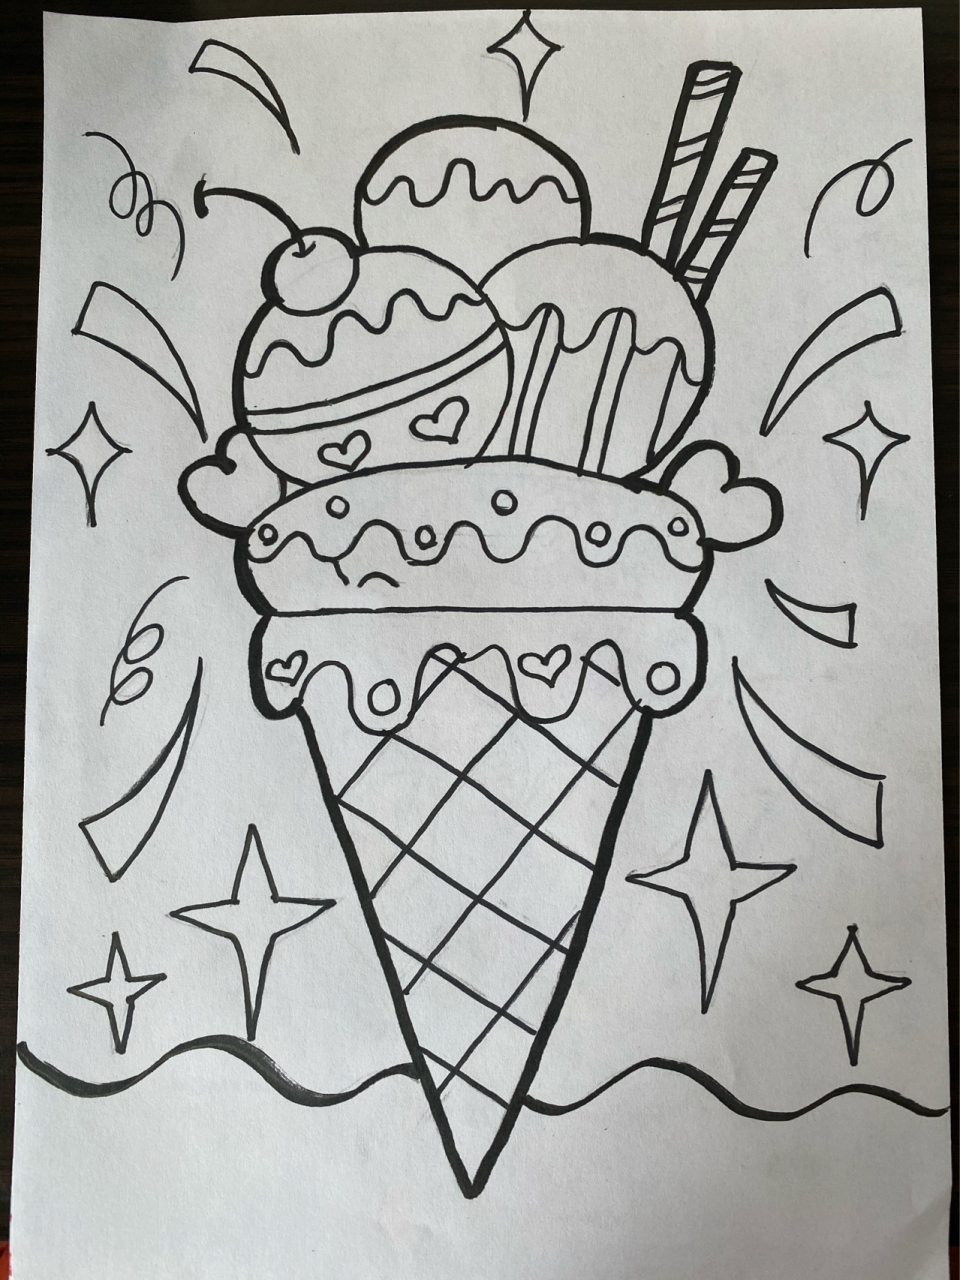 儿童画《美味冰淇淋》 夏天快到了   快把美味的冰